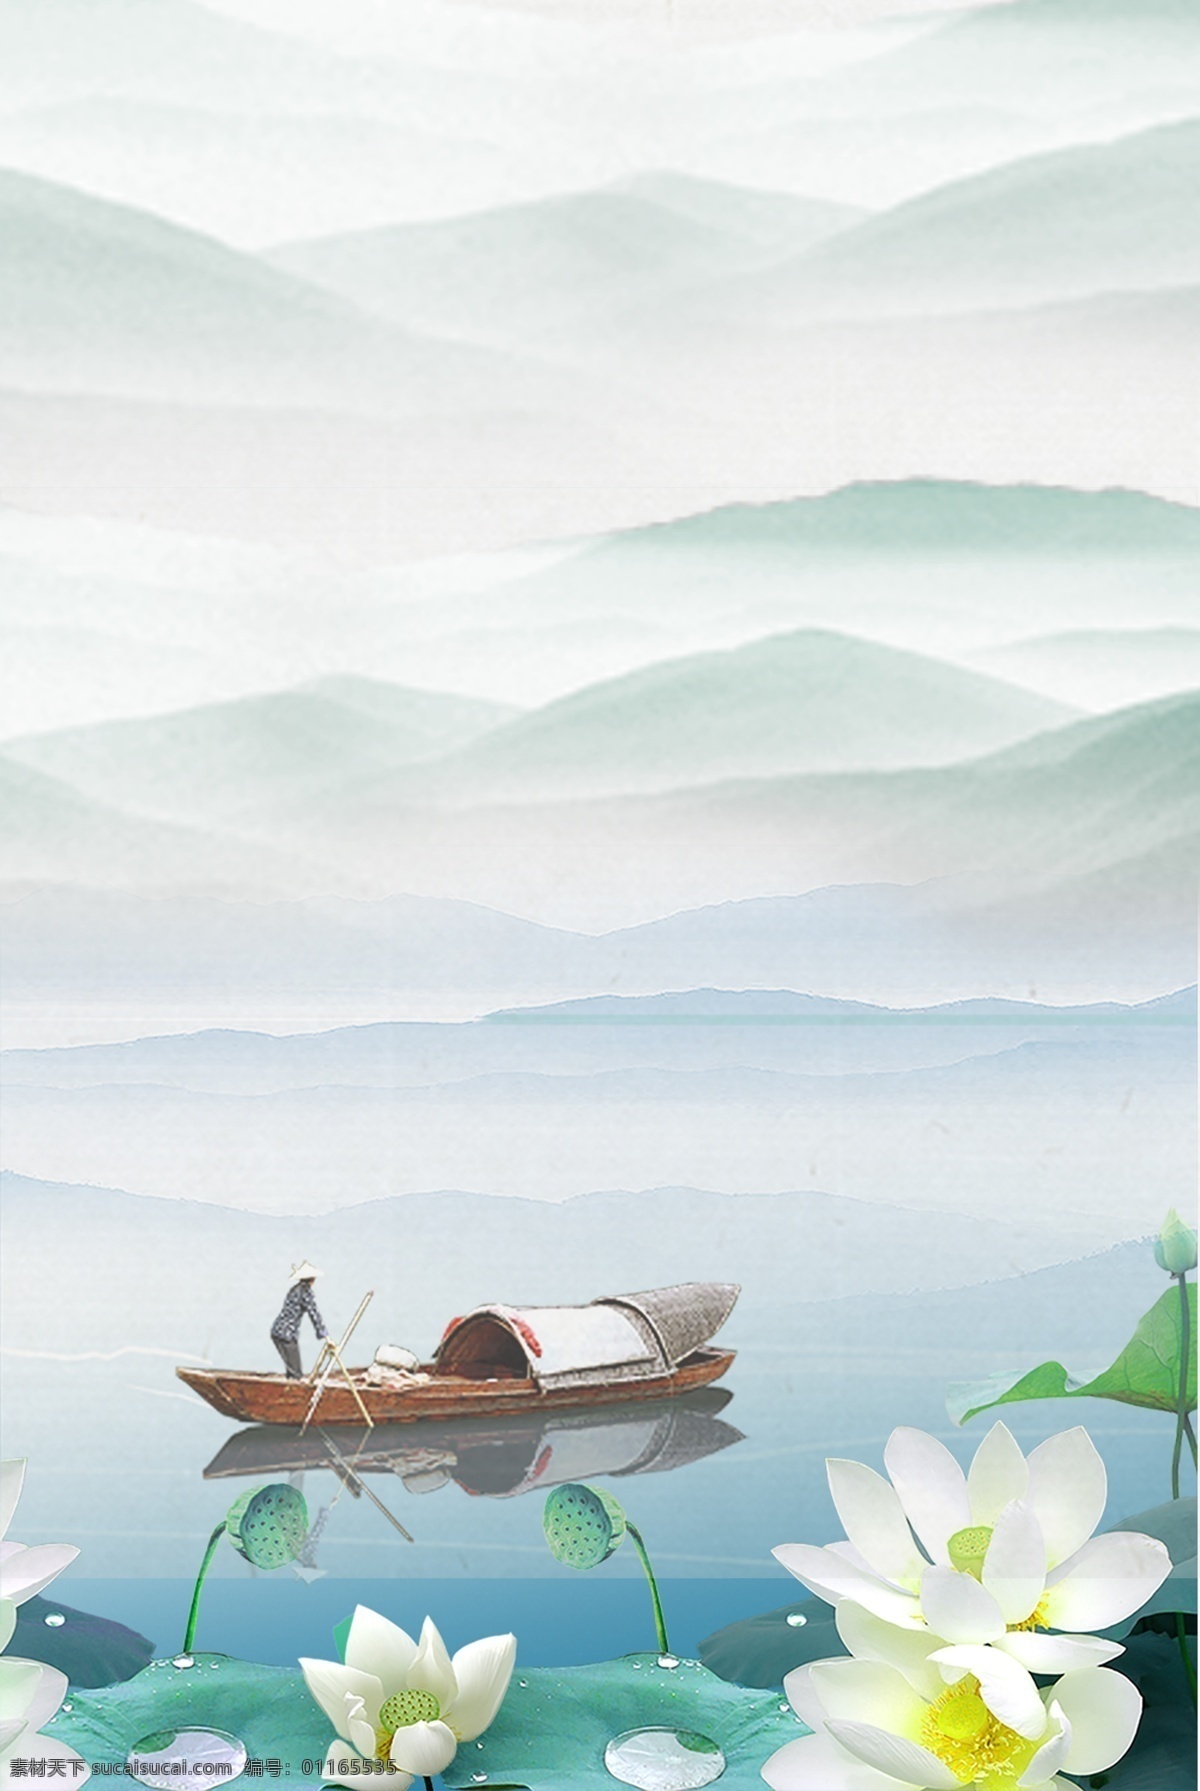 夏季 蓝色 山水画 海报 背景 图 简约 清新 中国风 山水 荷塘 荷花 水蓝 山峰 小船 人物